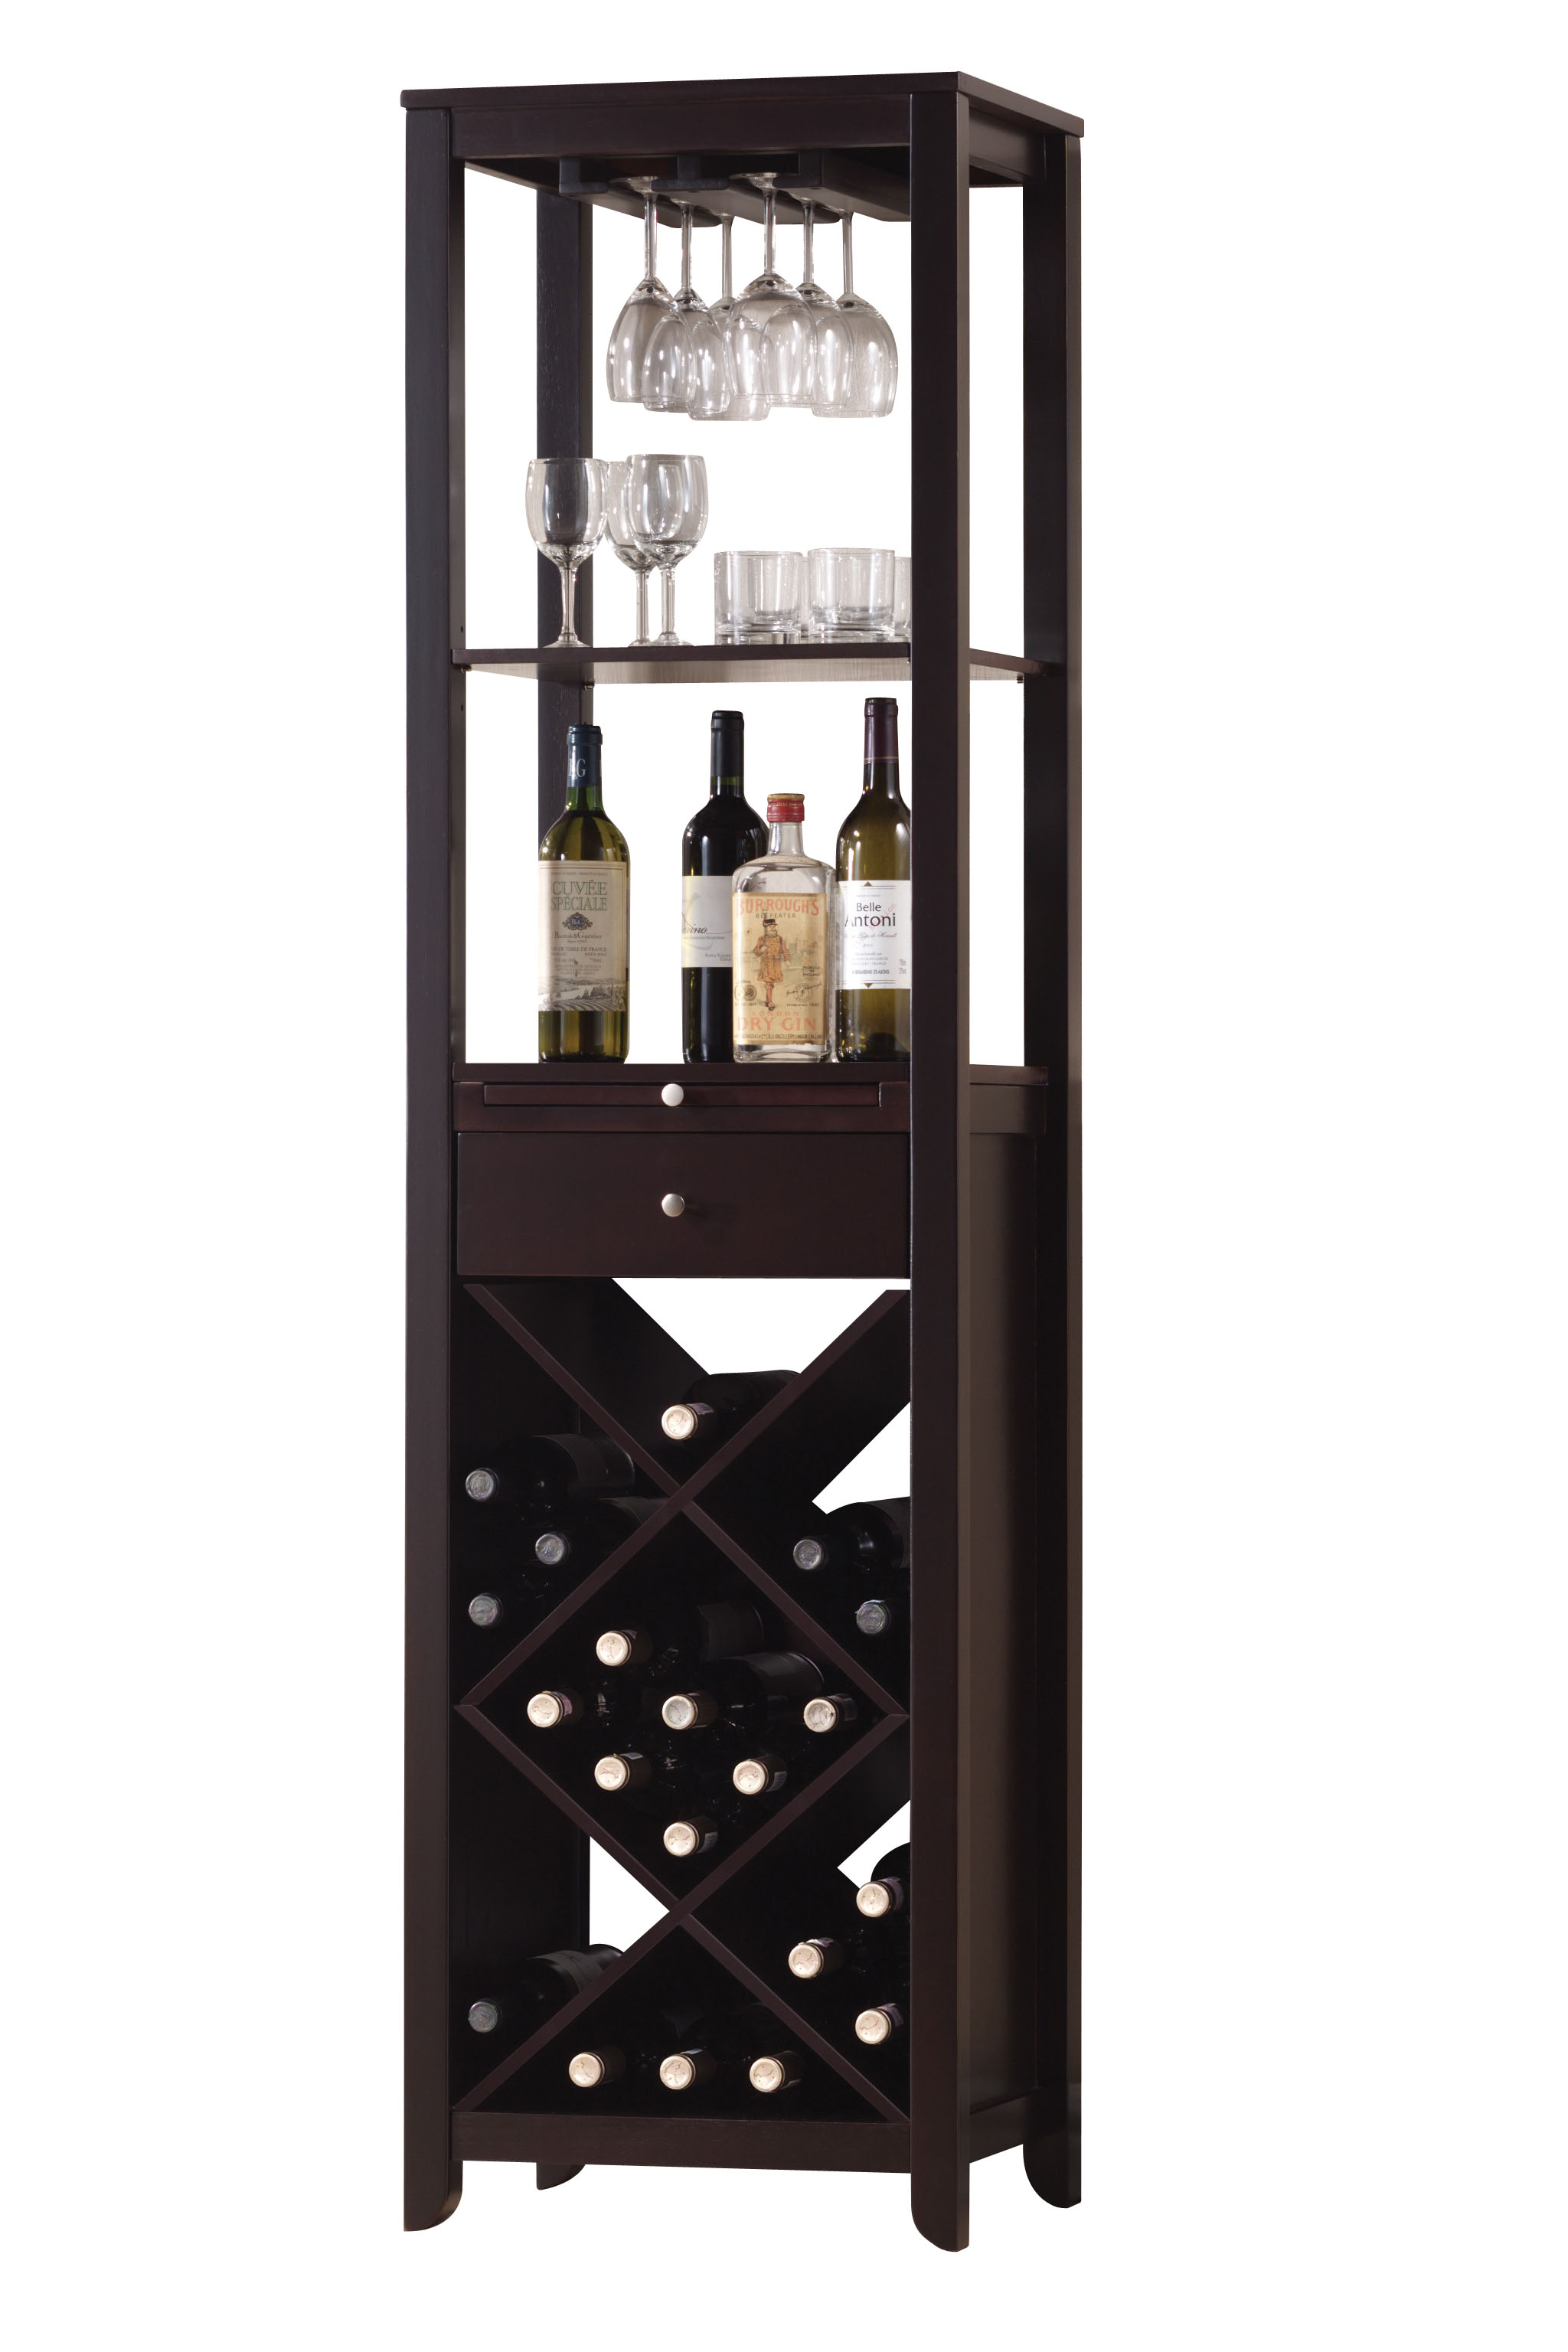 15" X 19" X 69" Wenge Wood Wine Cabinet